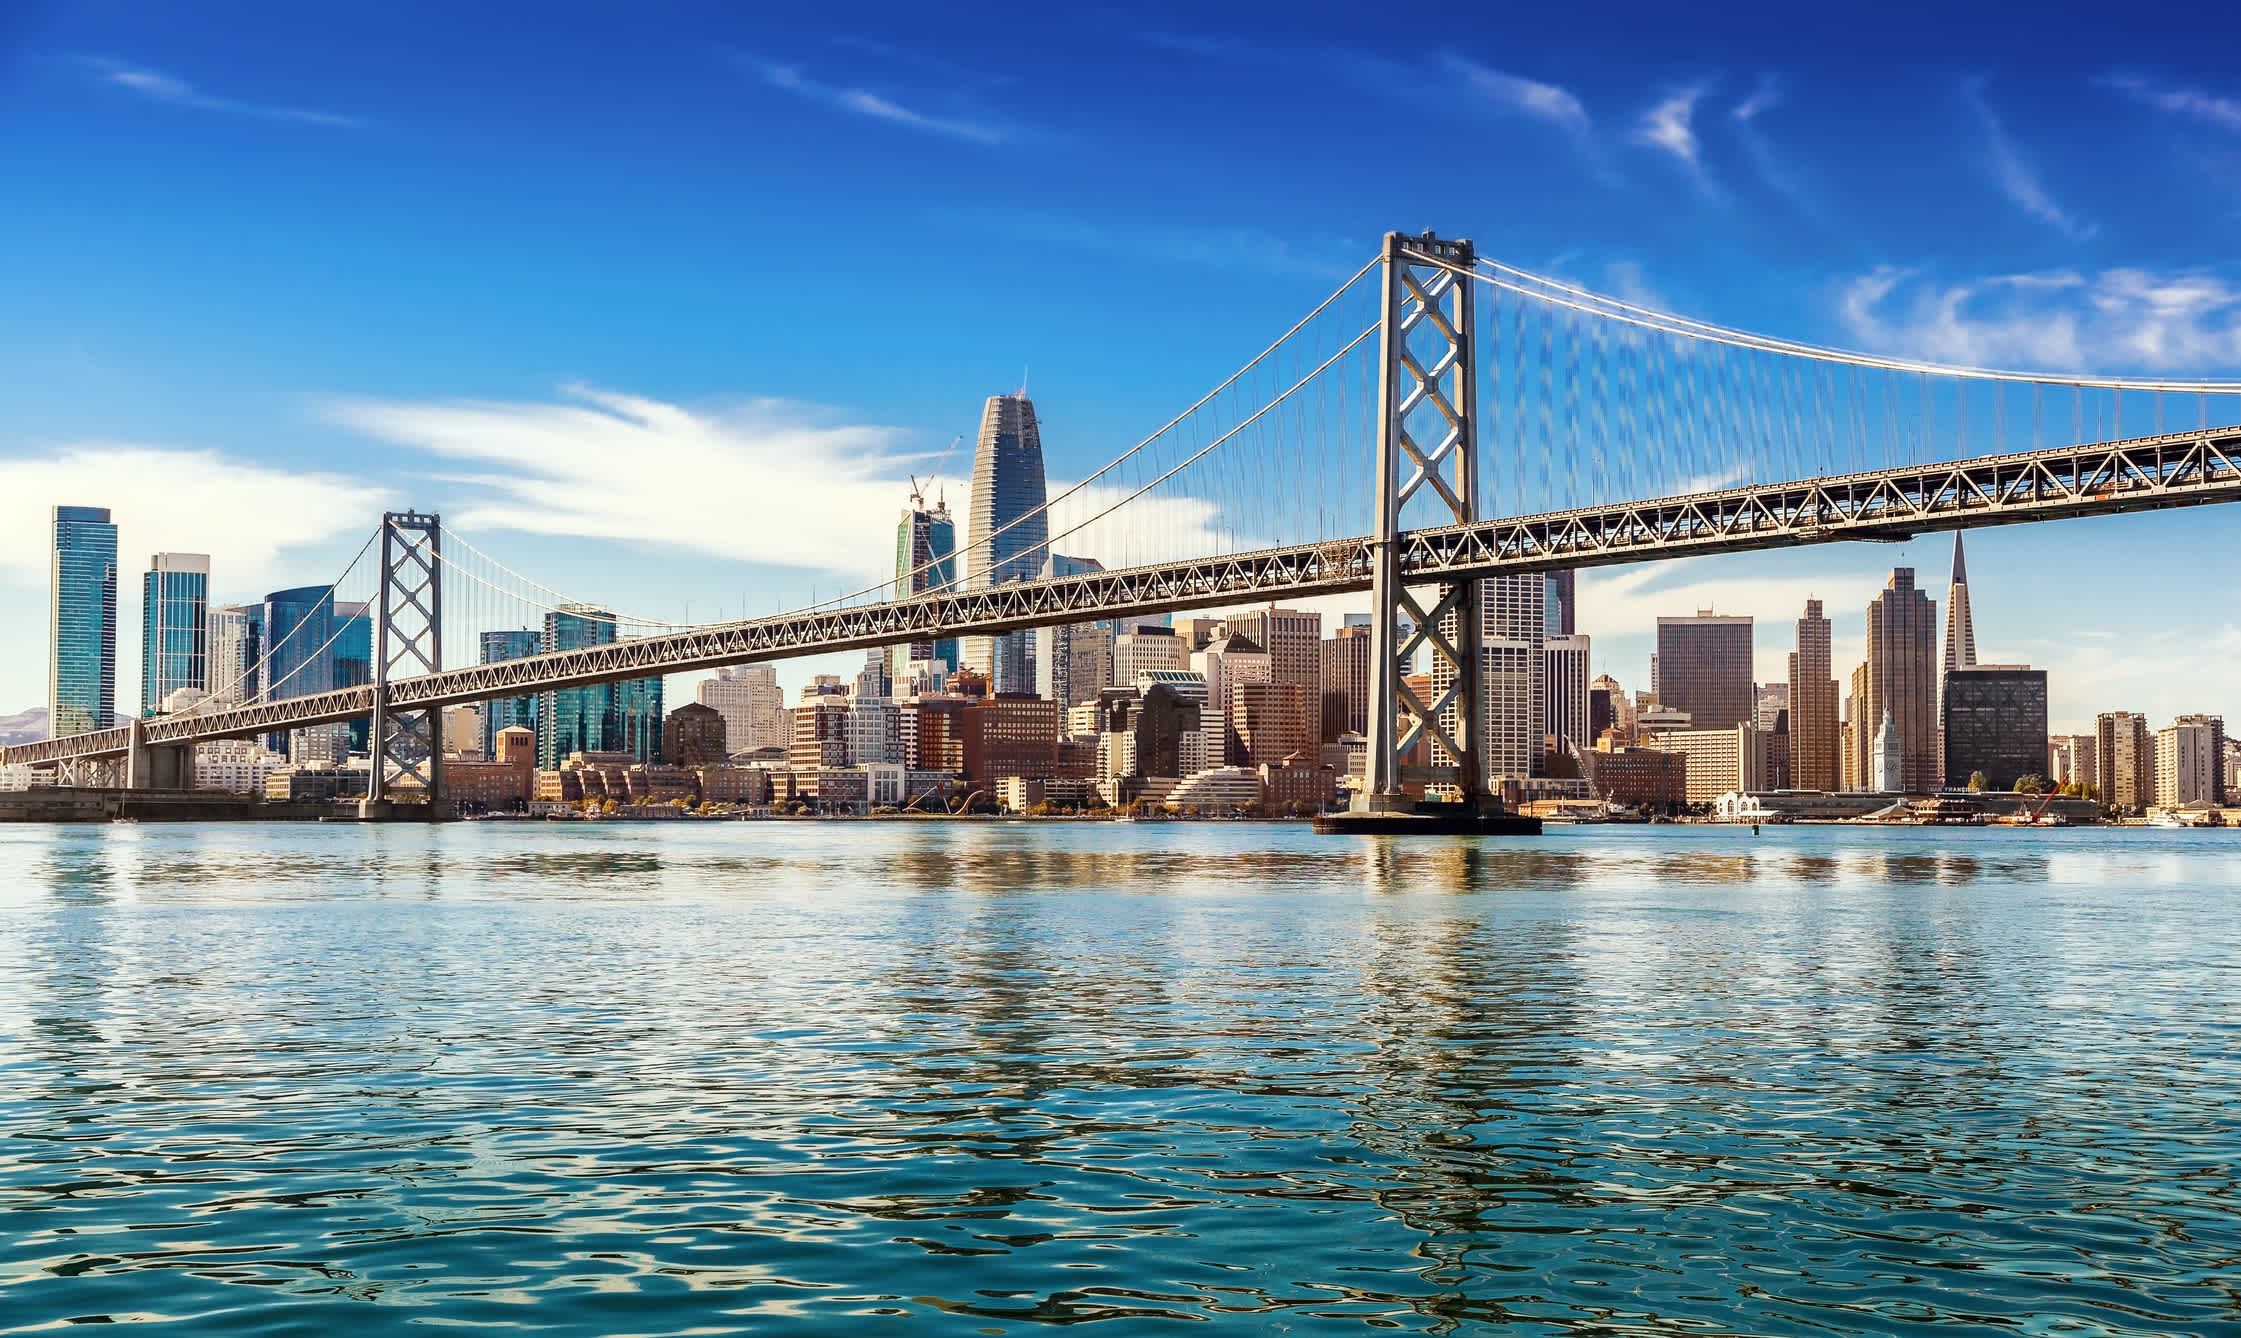 Blick auf die Oakland Bay Bridge in San Francisco, USA.